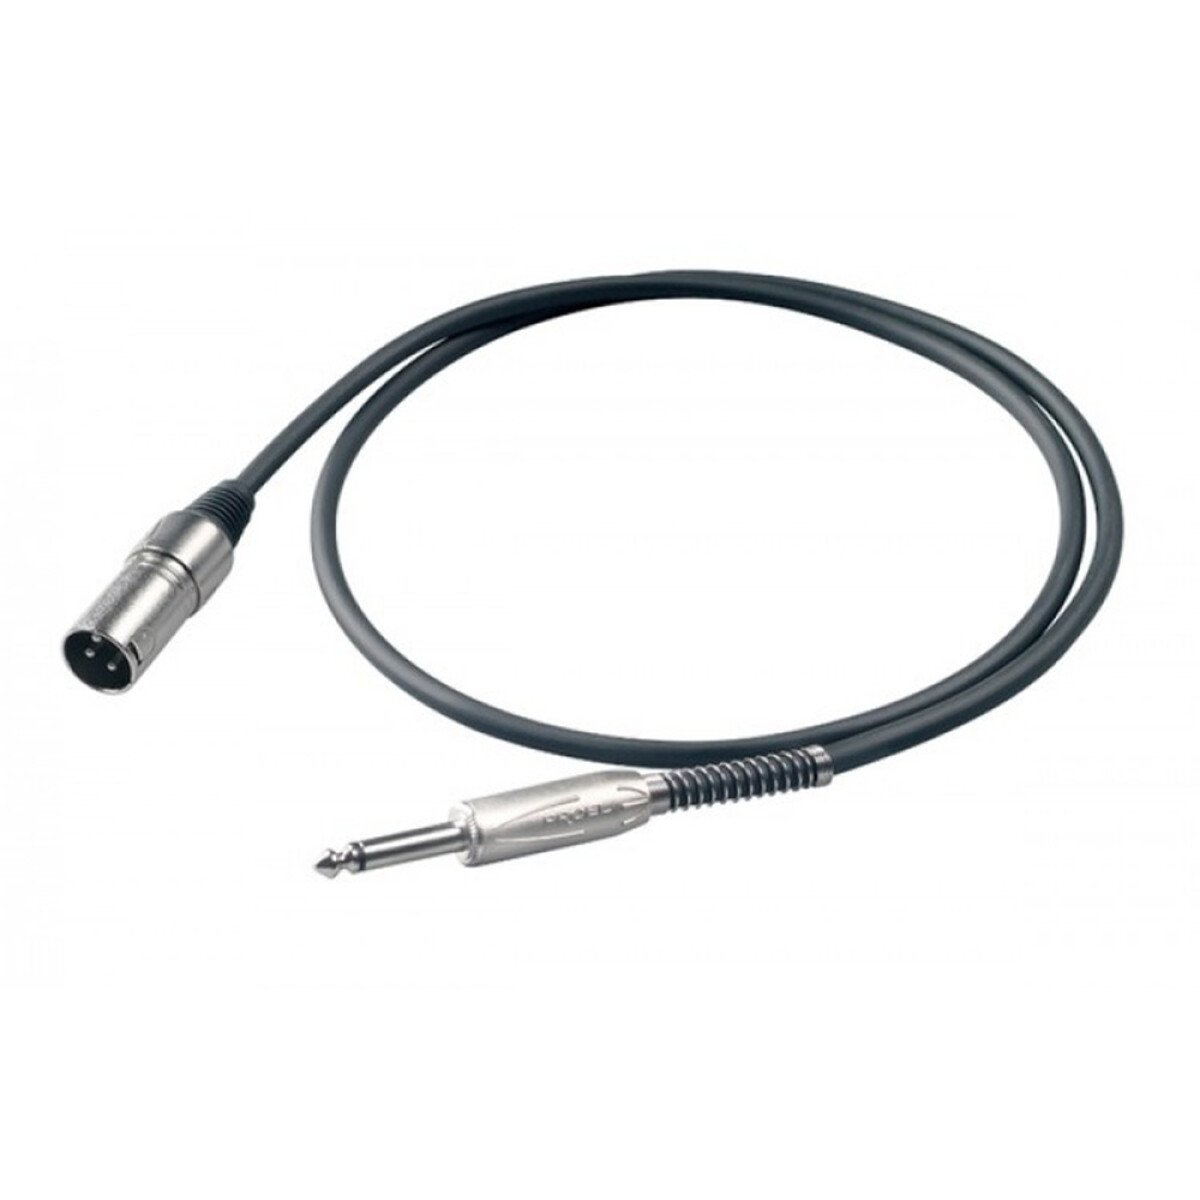 Cable Adaptador Proel Bulk220lu1 1xxlrm_1x6,3mm 1m 